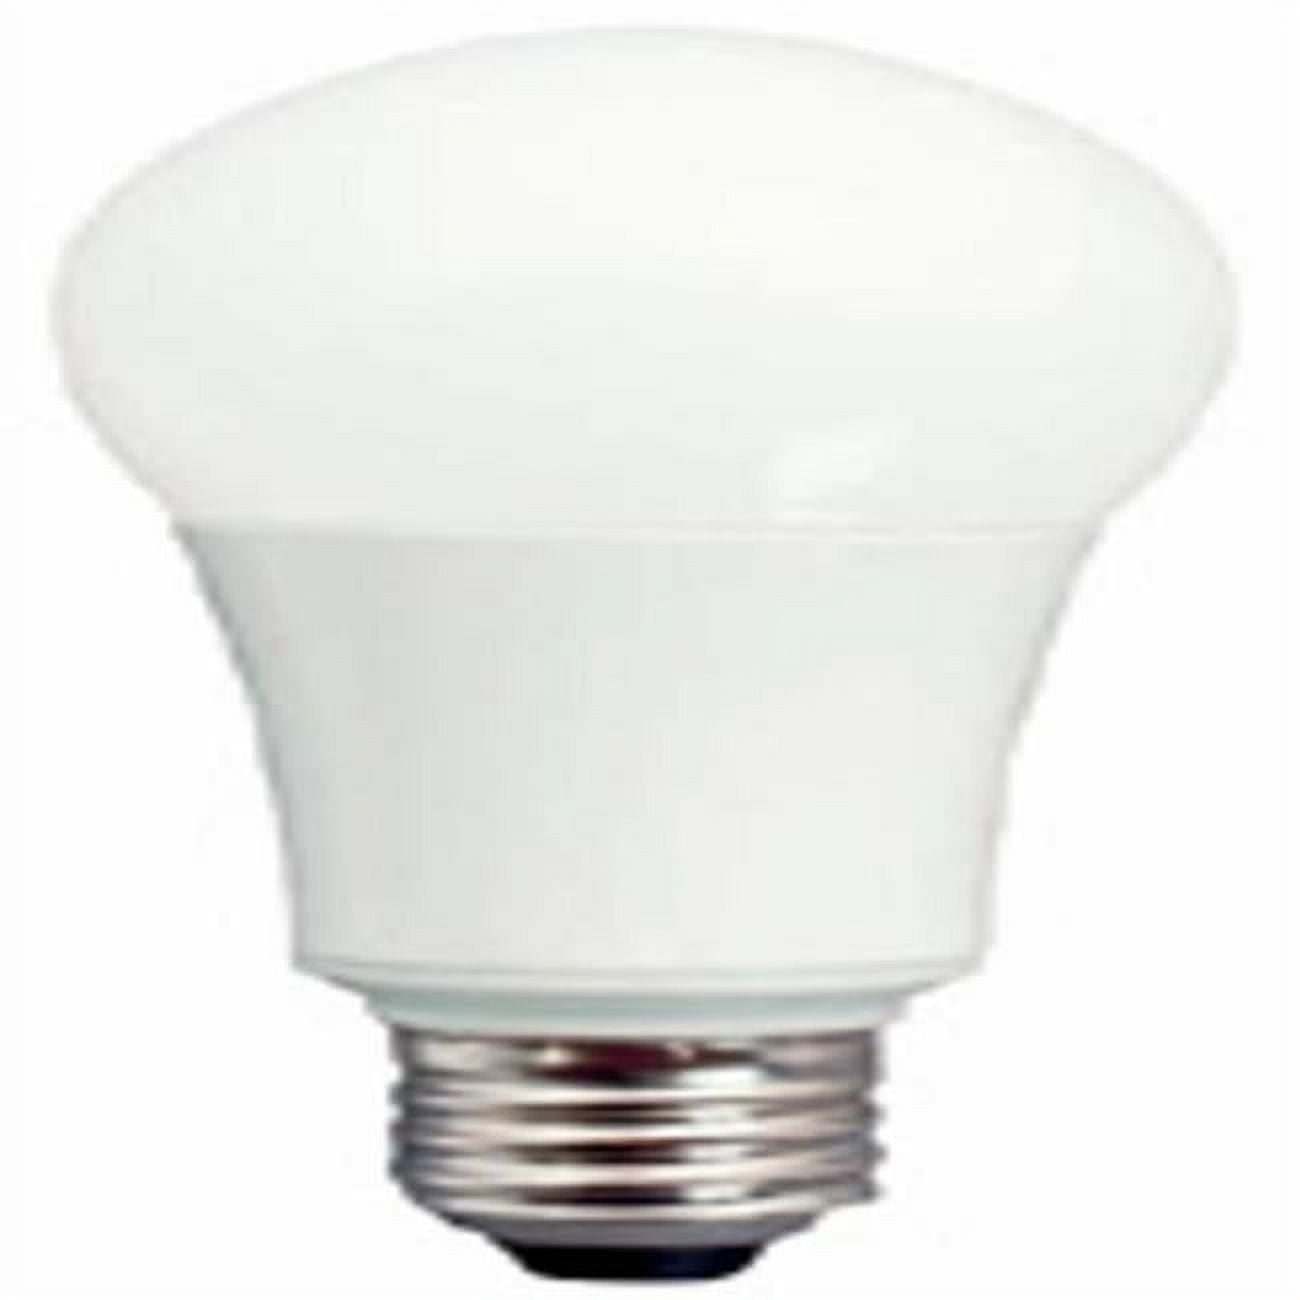 BAOMING 15W LED Black Light Bulbs,UV Energy Saving E26 Base 120V,UVA  395-400nm, Glow in Dark,2 Pack 